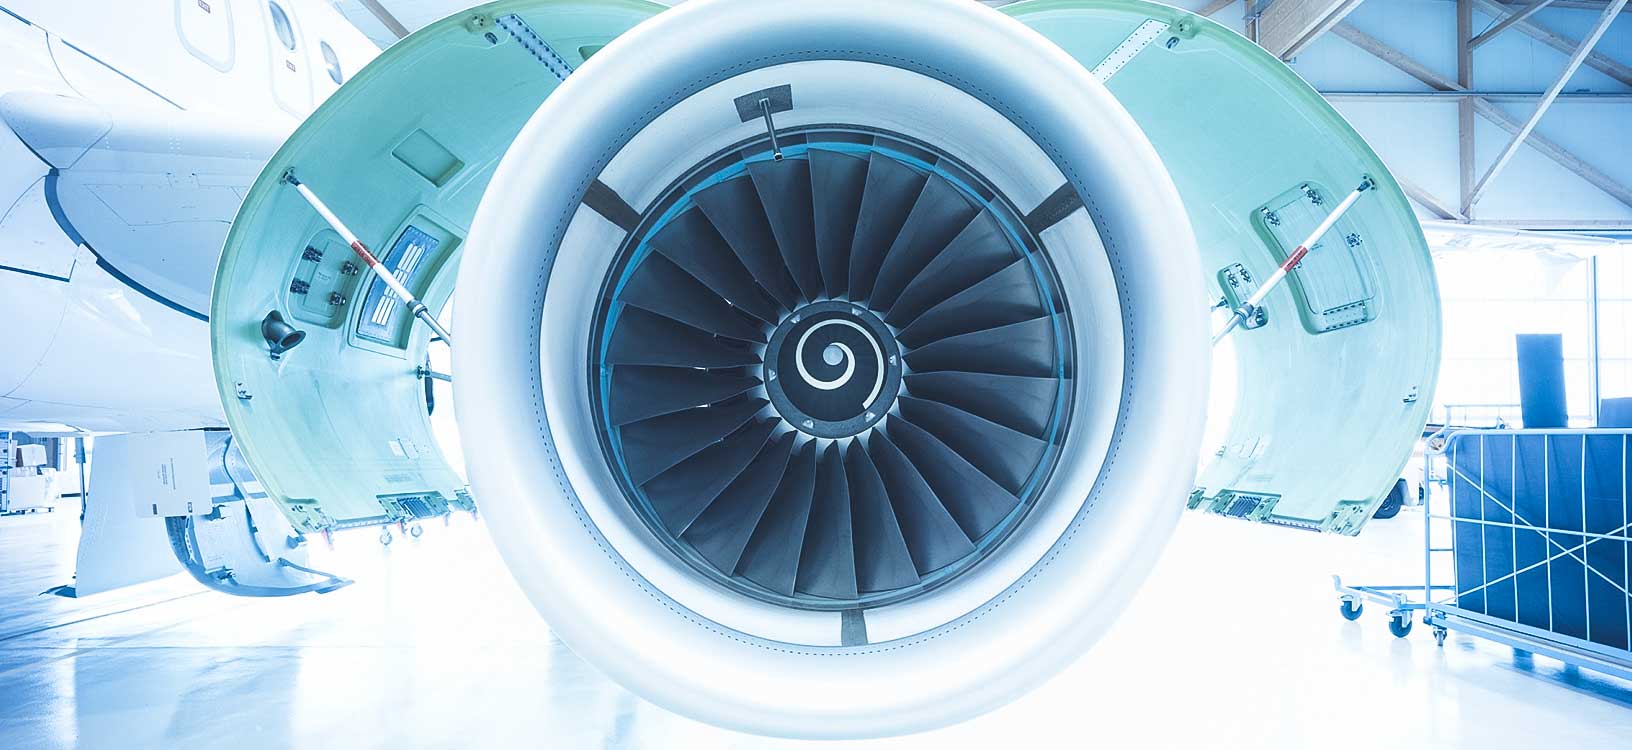 Imagen de un motor de avión